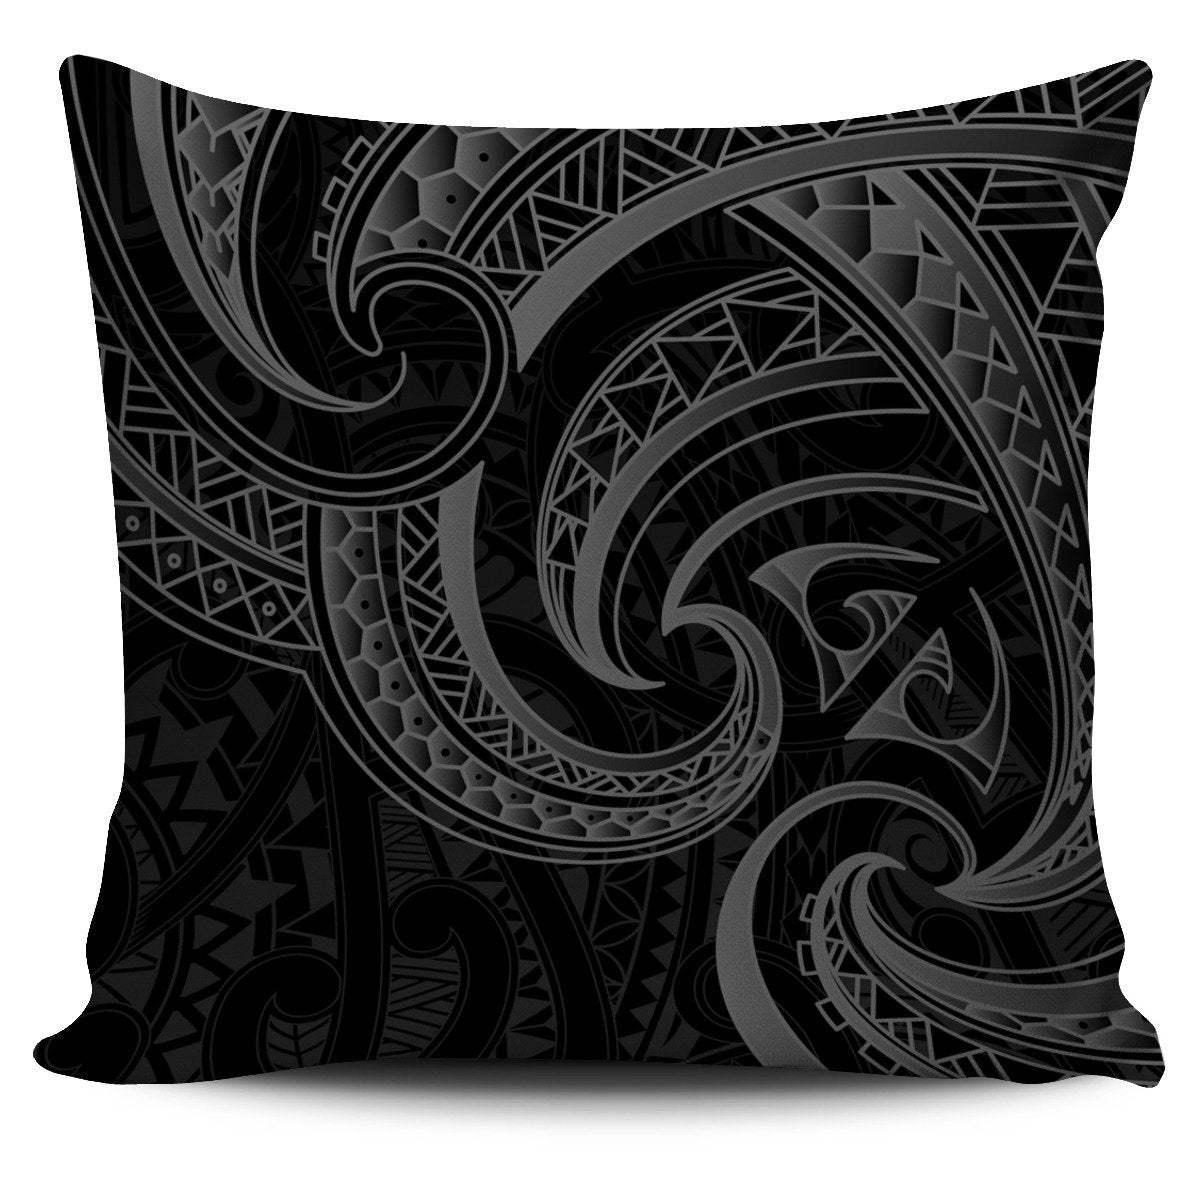 New Zealand Maori Mangopare Pillow Cover Polynesian - Black Pillow Cover One Size Black - Polynesian Pride